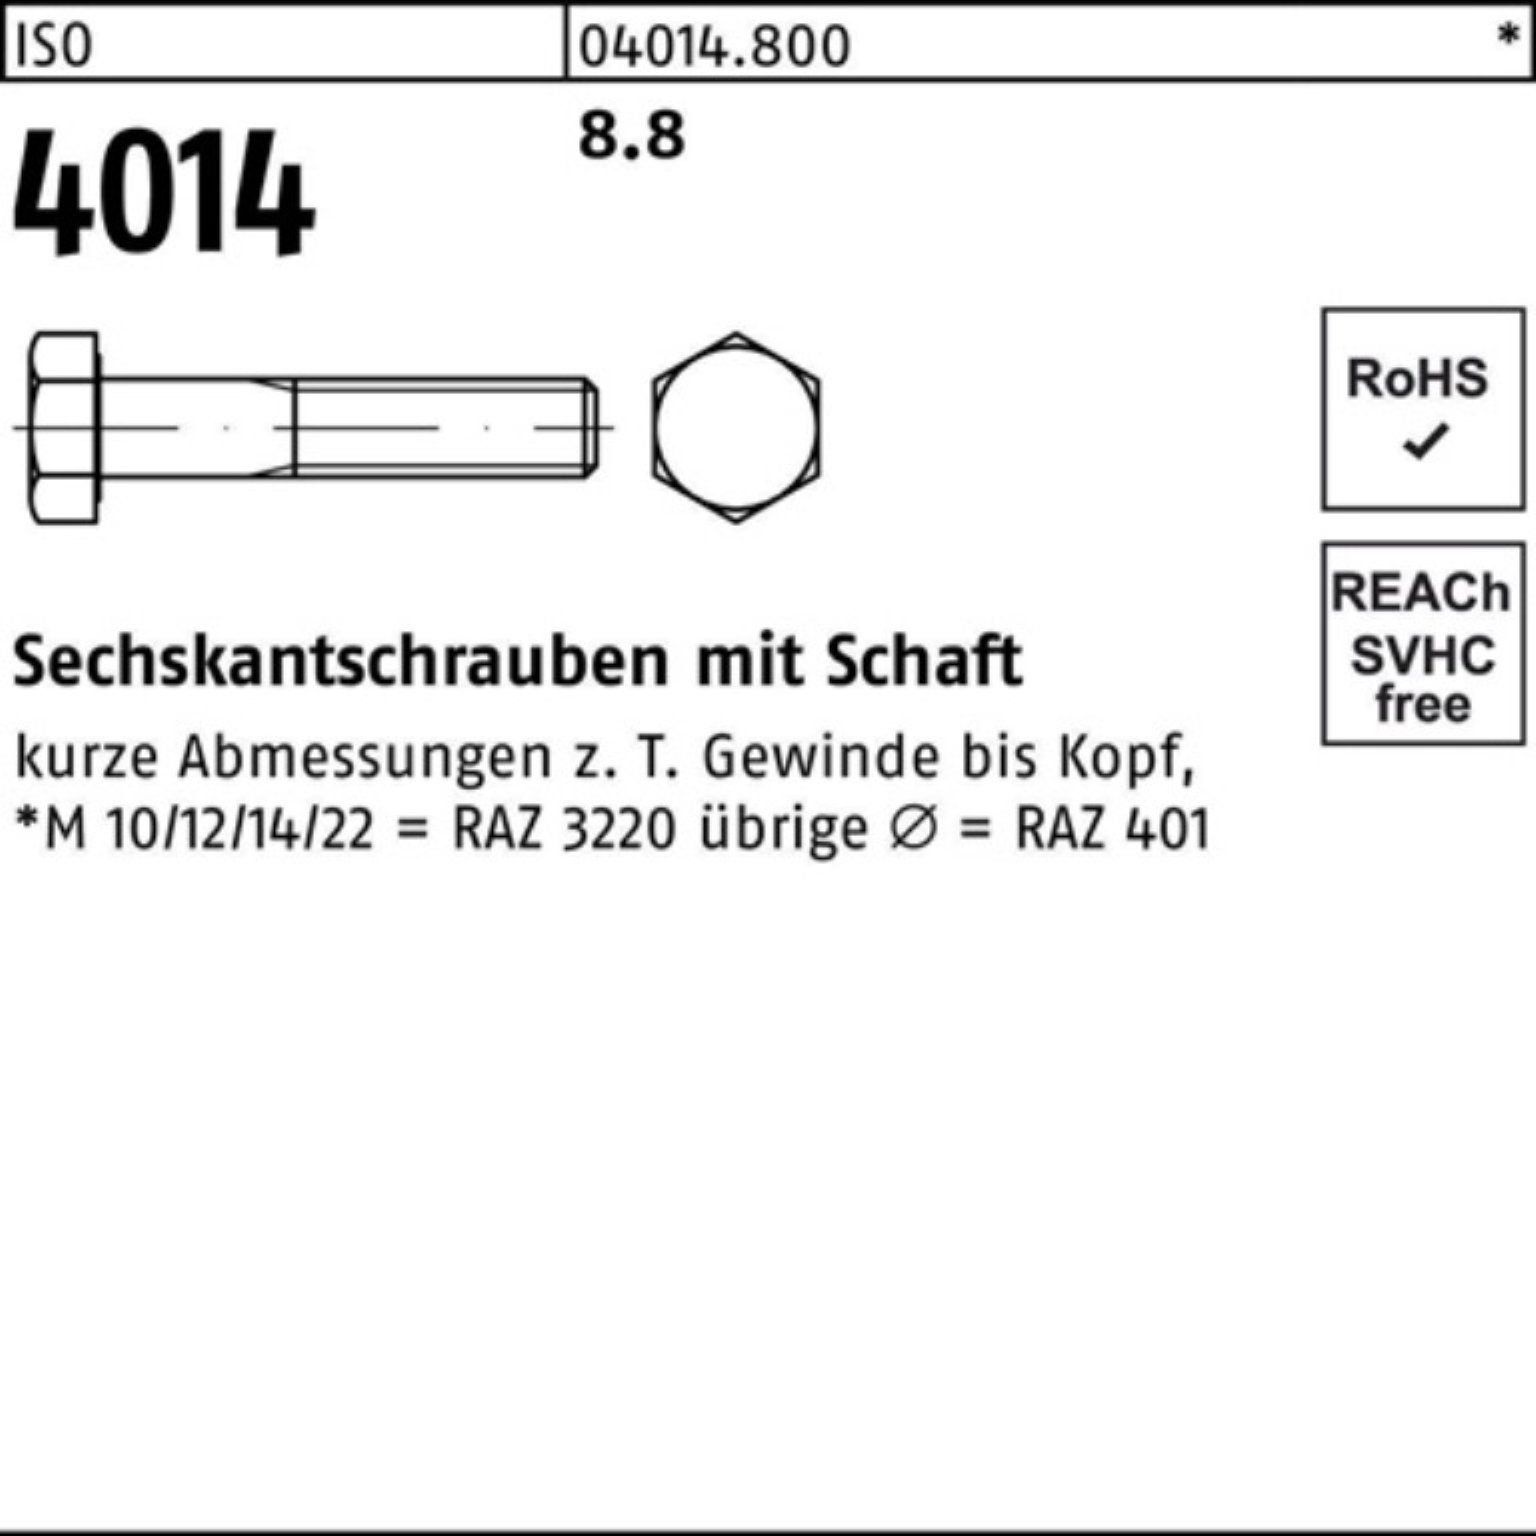 Bufab Sechskantschraube 100er 8.8 IS Stück 4014 ISO 25 200 Sechskantschraube Pack M14x Schaft